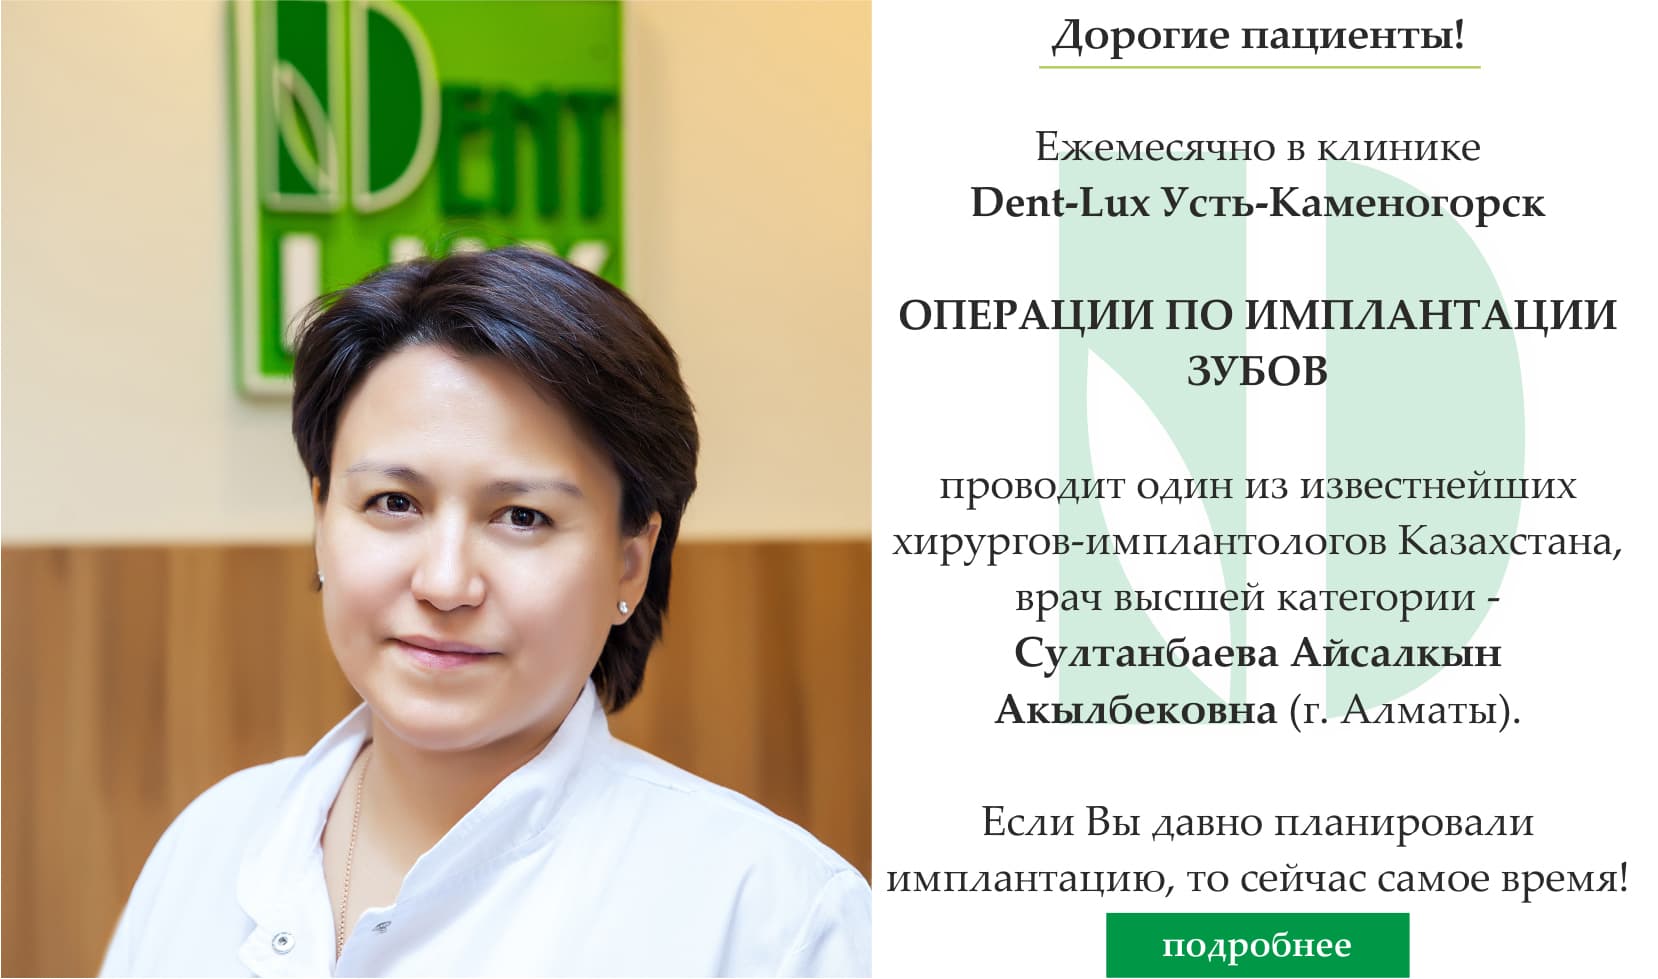 Программы укрепления зубов кальцием и фтором в Казахстане, фото 3